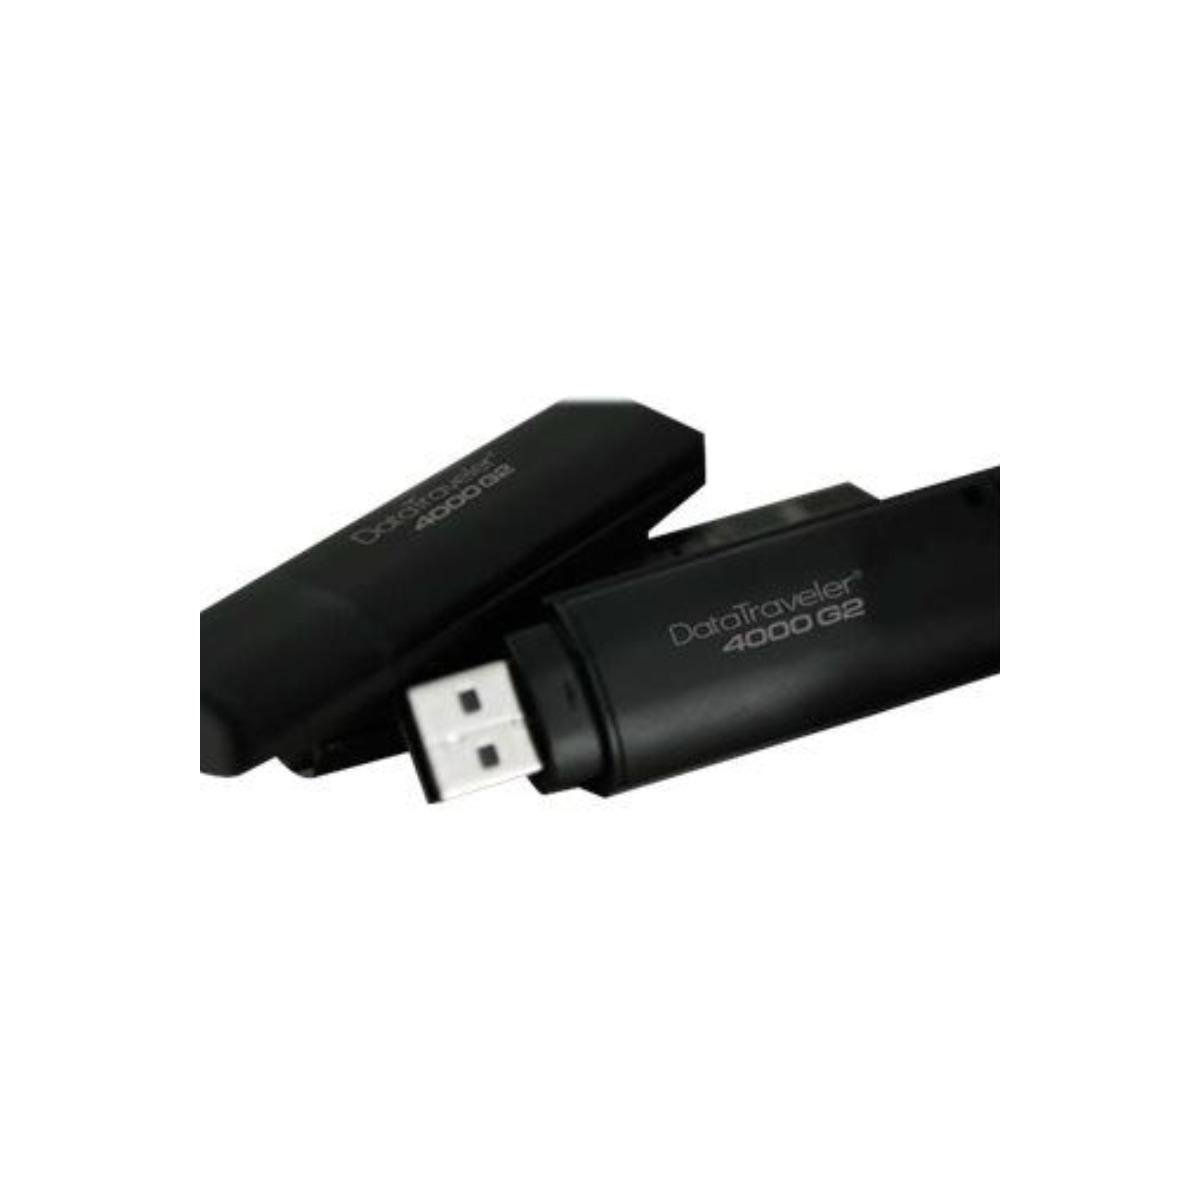 KINGSTON DT4000G2DM/64GB USB Stick GB) (Schwarz, 64